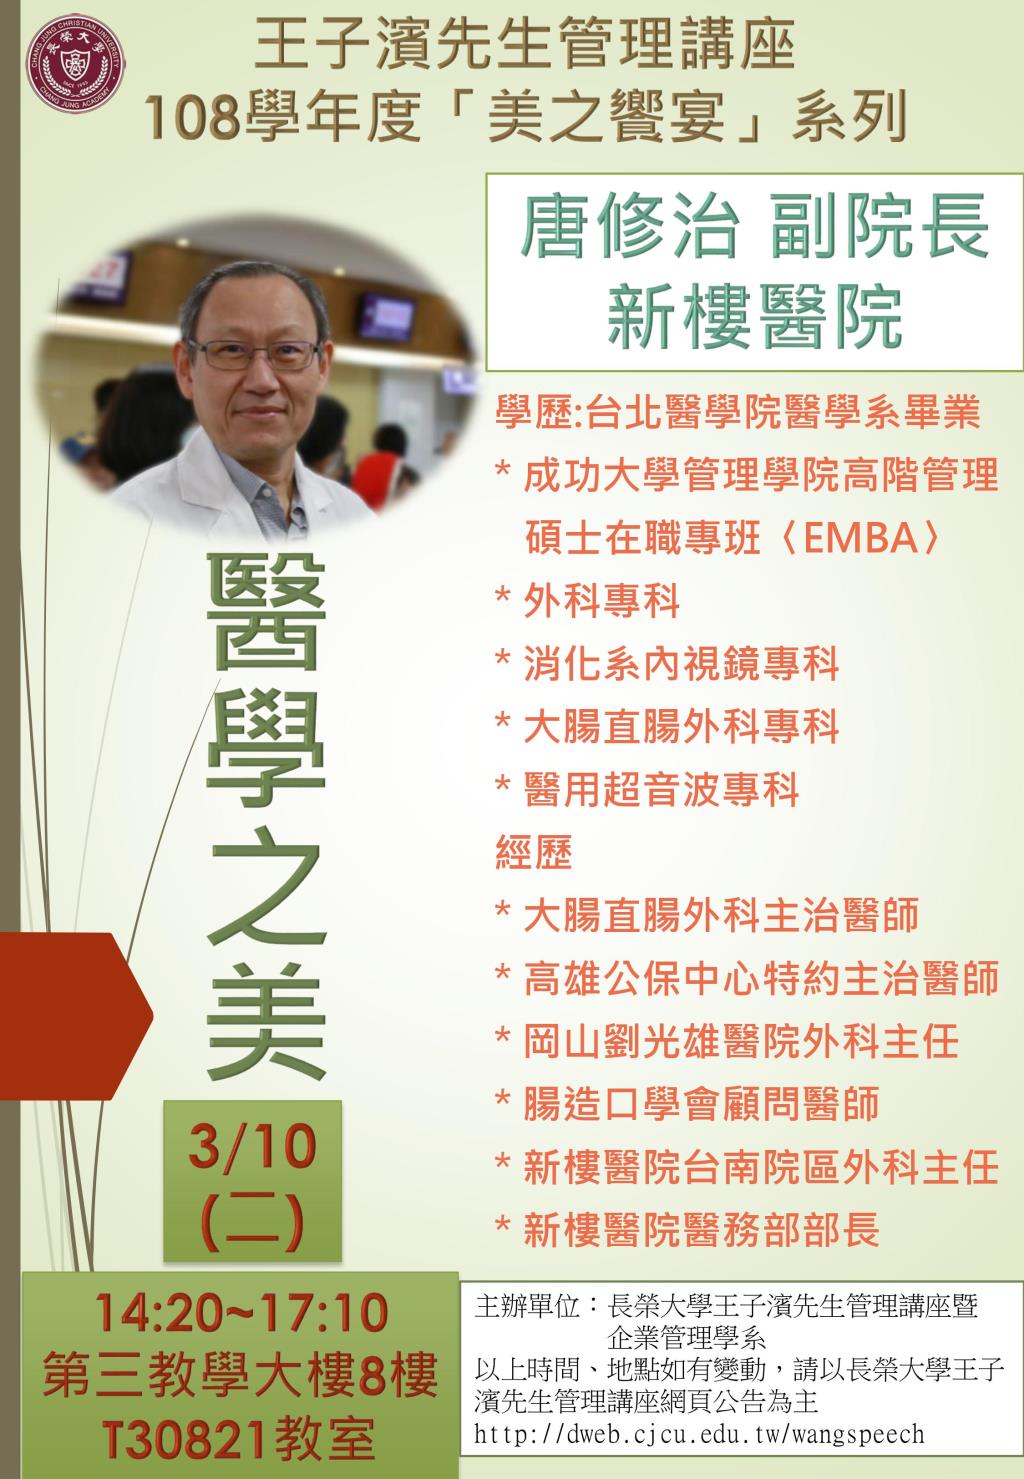 敬邀參加本週二下午(03/10)王子濱先生管理講---醫學之美_唐修治副院長 專題演講